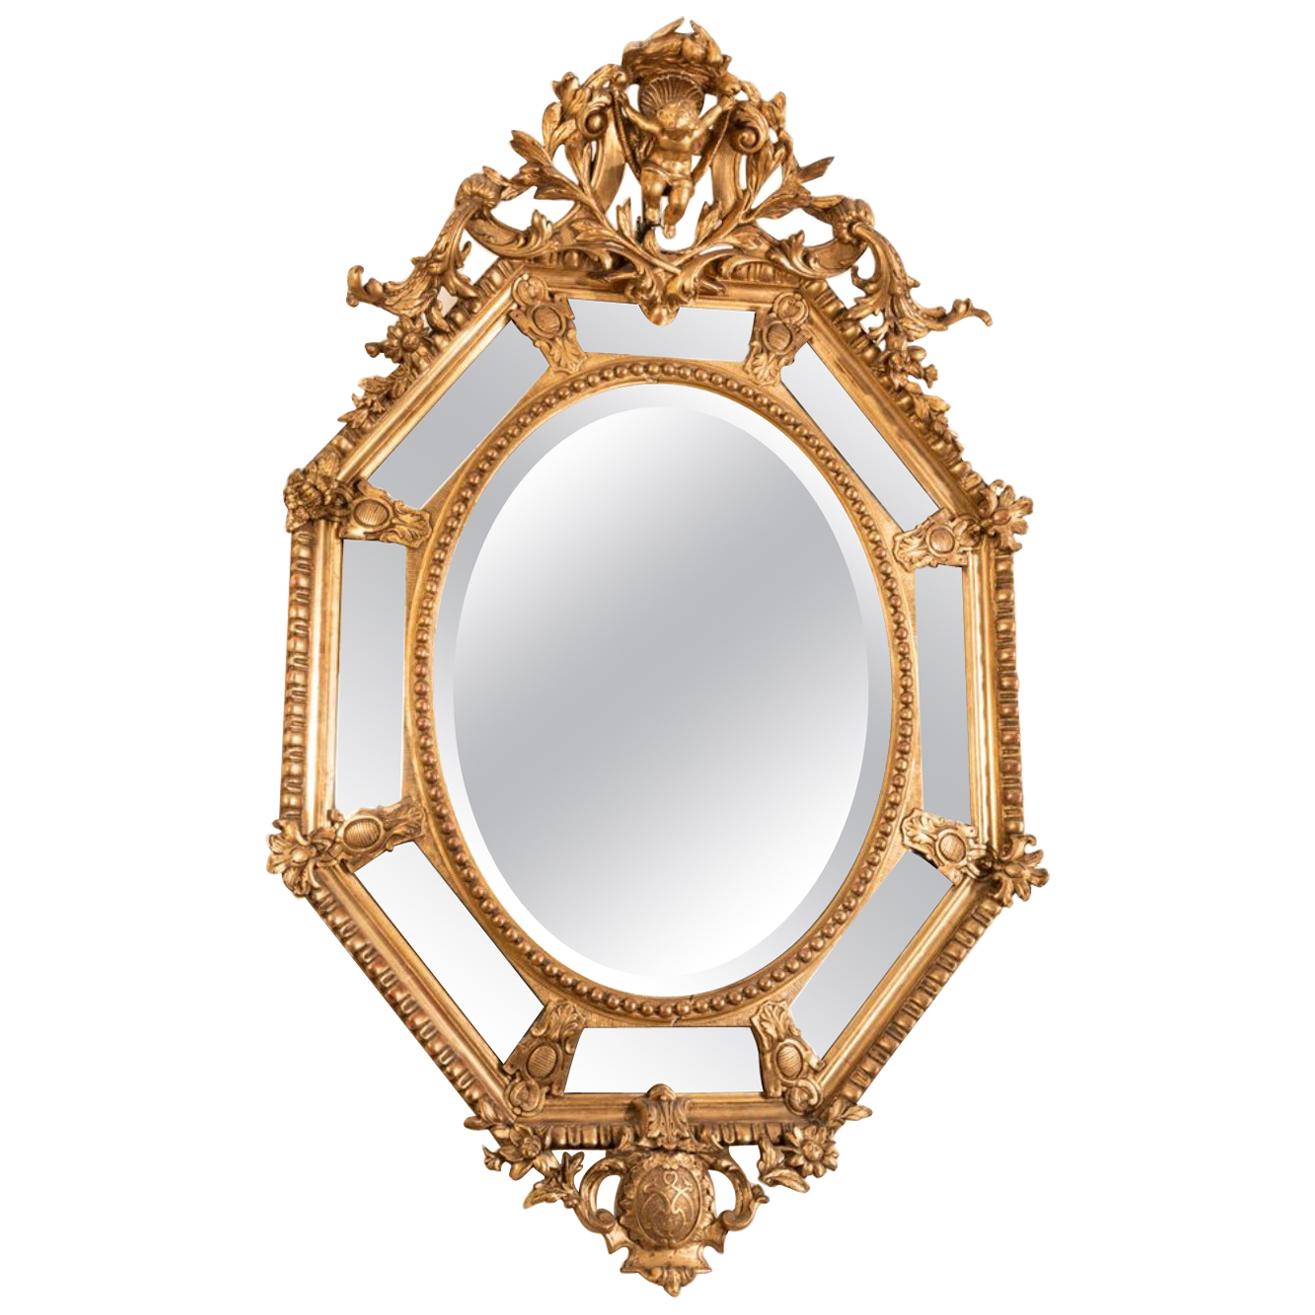 Großer achteckiger Spiegel mit hölzernen Glasperlen und vergoldetem Stuck, verziert mit einem ovalen, in der Mitte abgeschrägten Spiegel, umgeben von einem Perlenfries. Verzierung auf dem Giebel einer Liebe über Lorbeerzweigen und unter einer